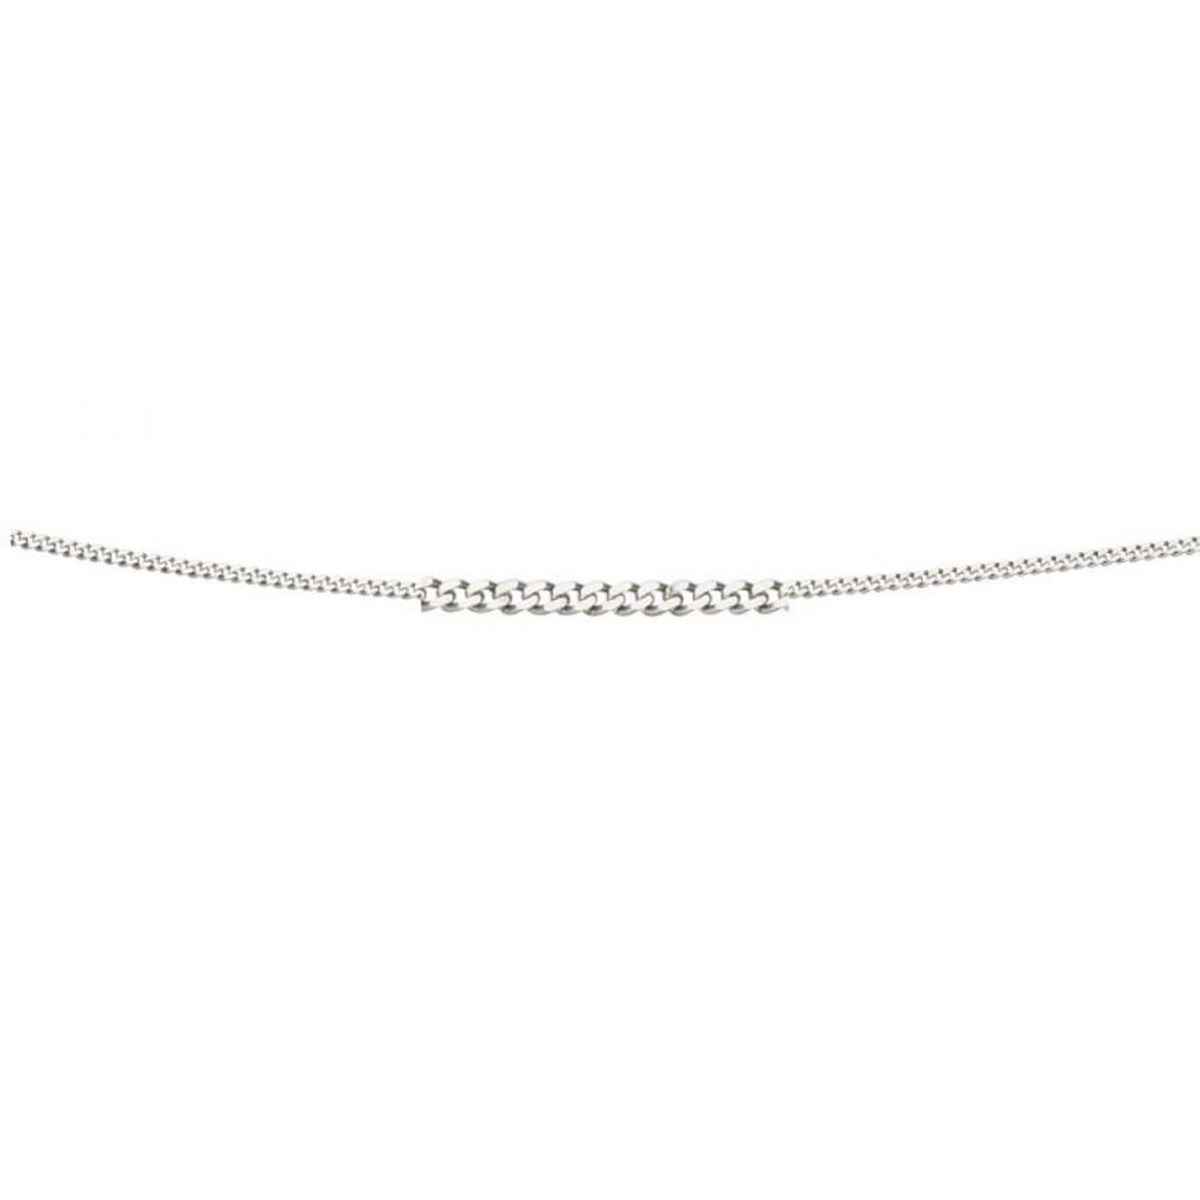 Collier rubis - diamant -  Chaine en Or 375 de 41cm - Pendentif en Or blanc 375/1000 - vue 2